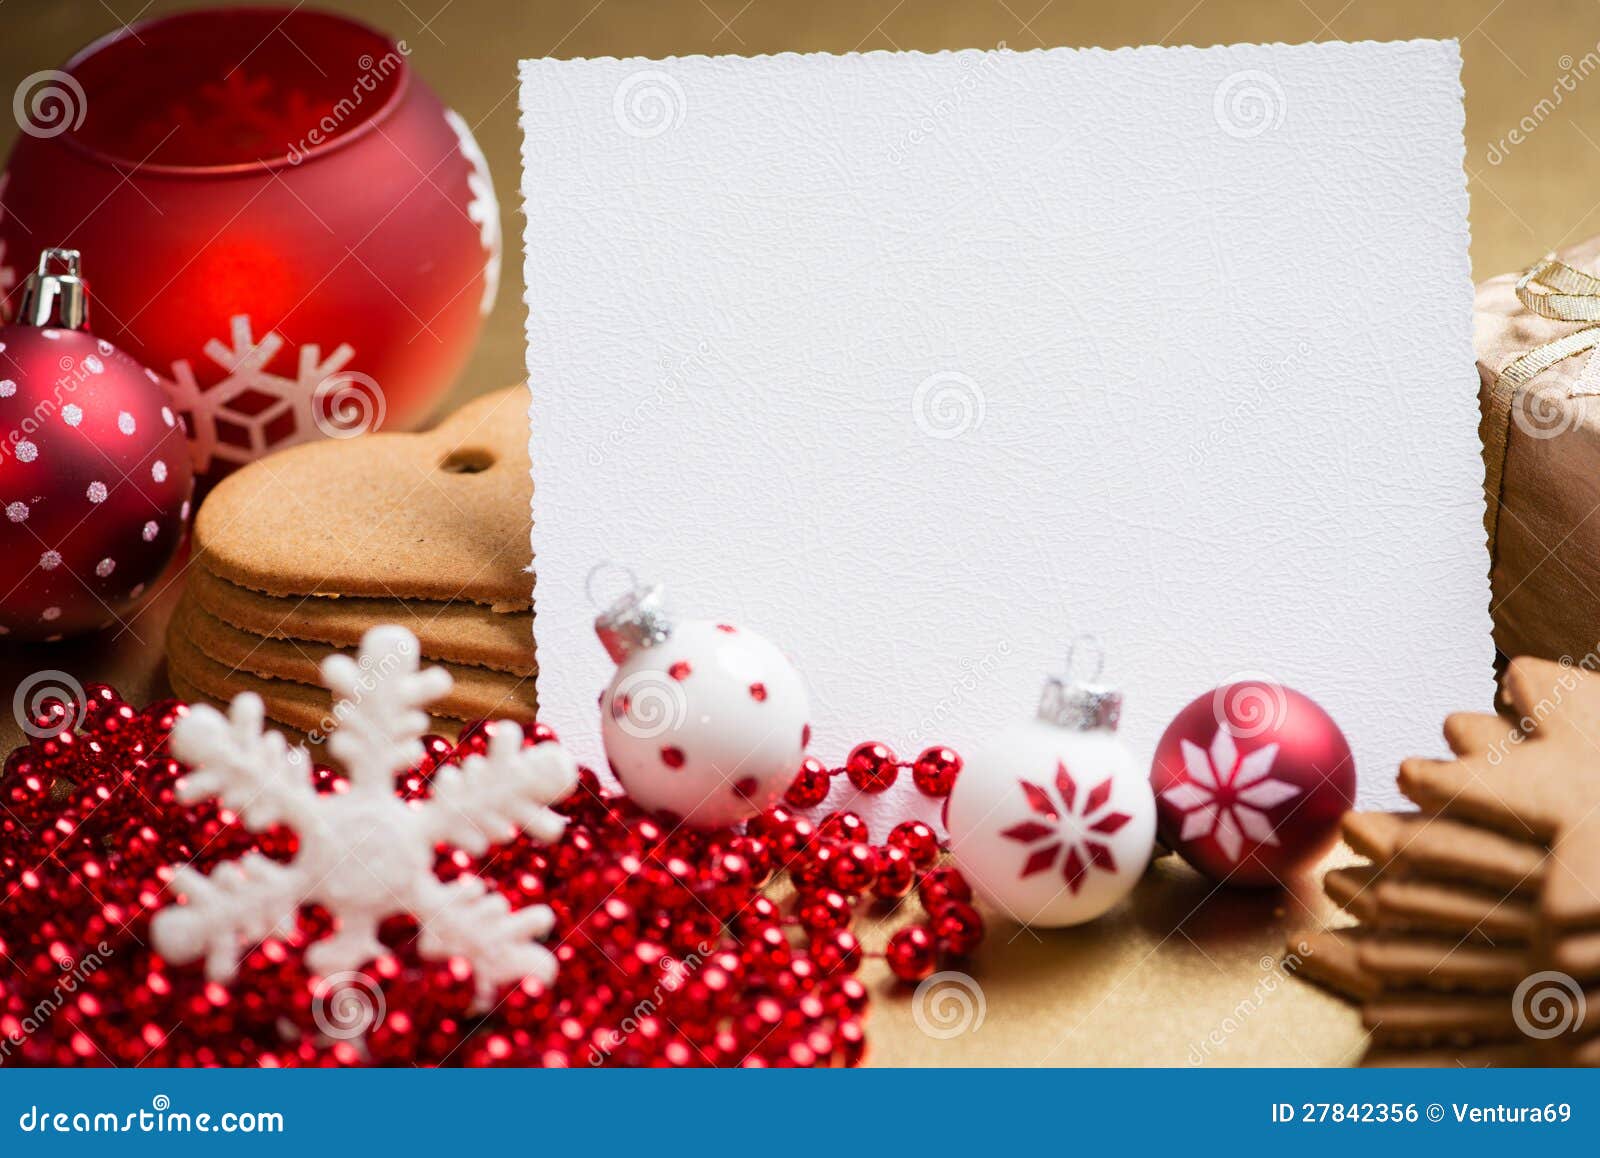 Toutes nos idées de cartes de Noël à fabriquer - Prima.fr